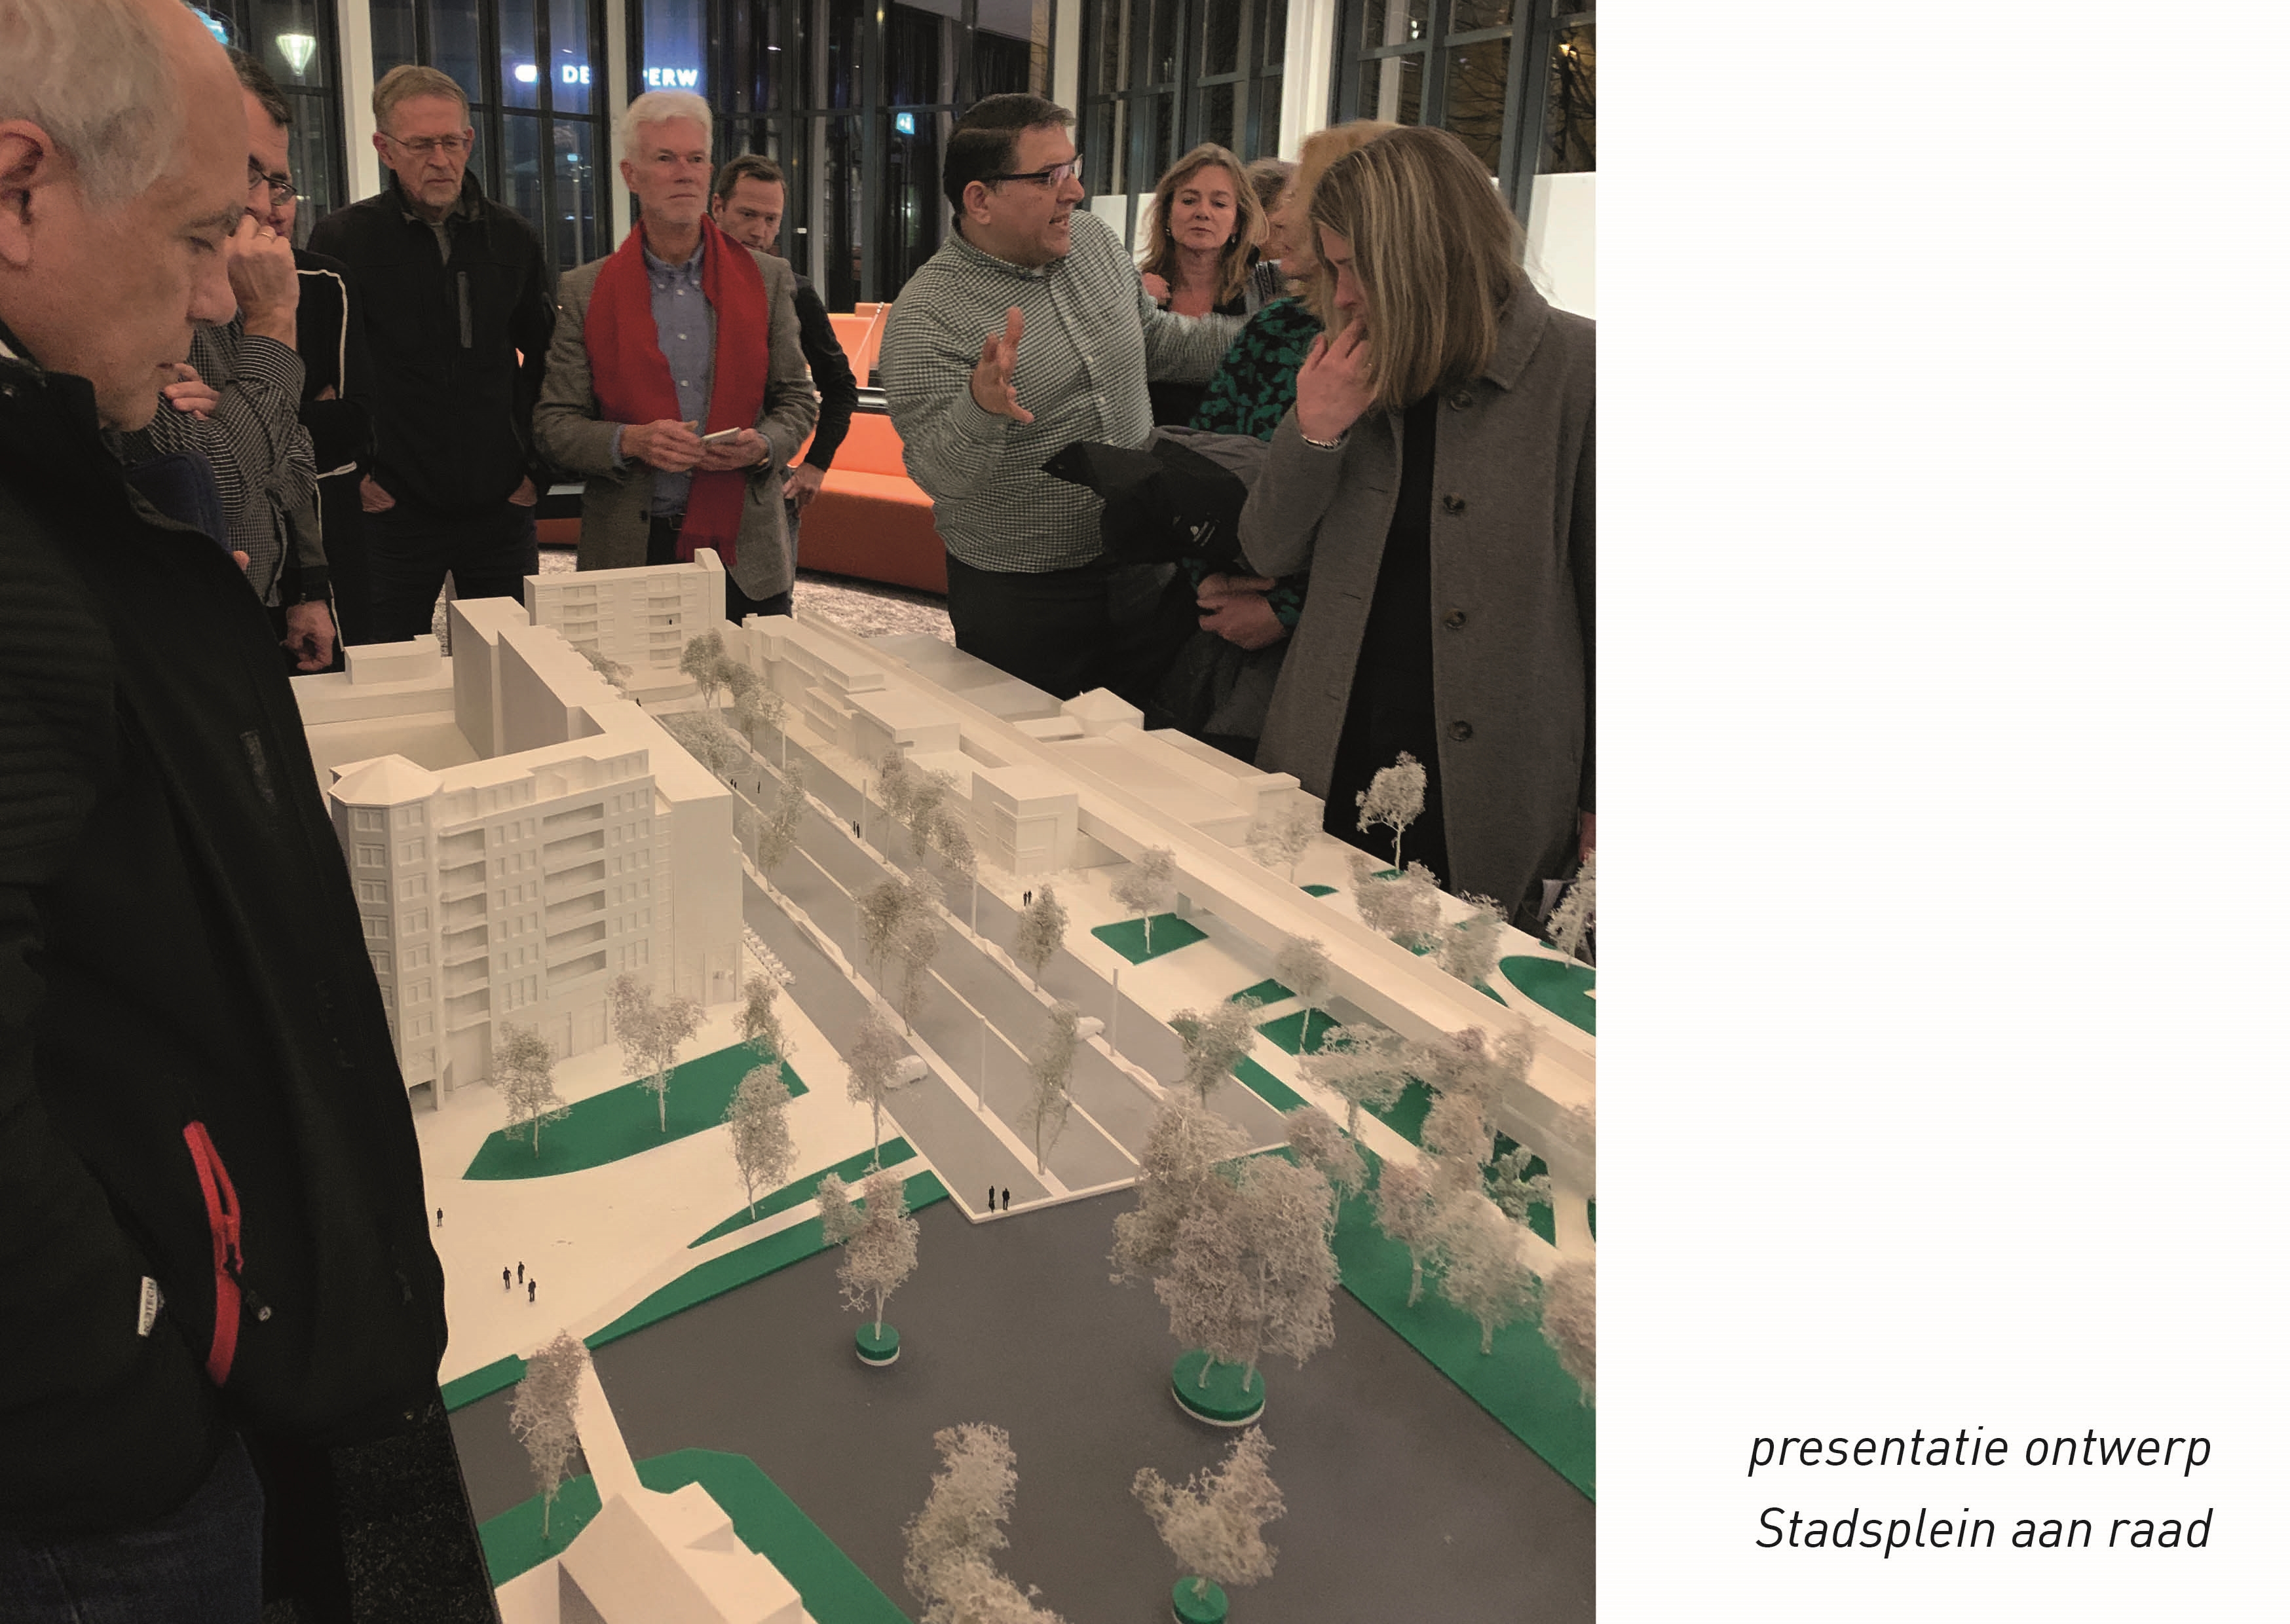 Foto van de presentatie van het ontwerp Stadsplein aan de raad. Raadsleden staan om een maquette heen.